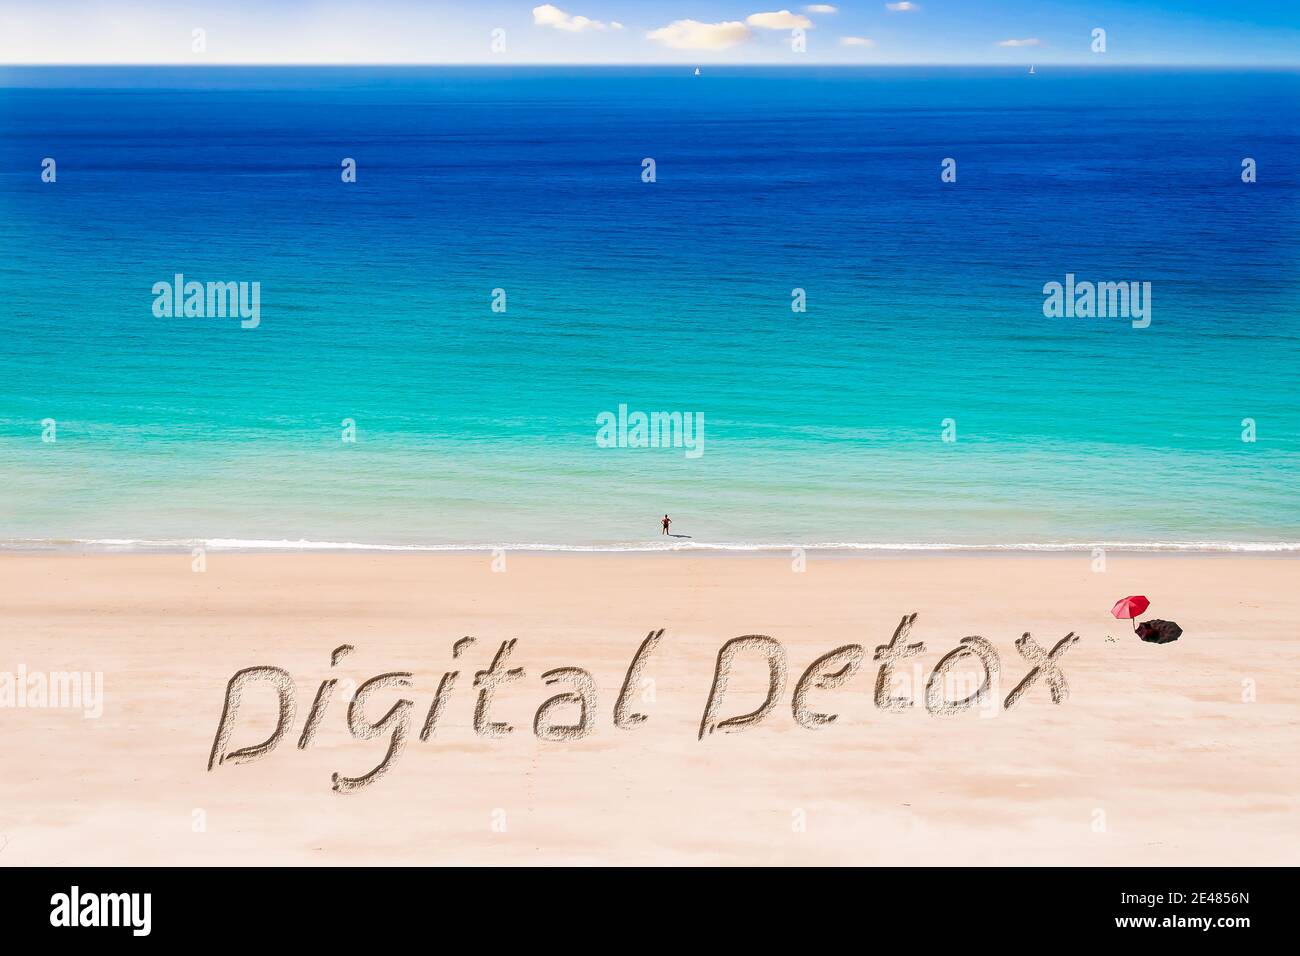 Die Worte Digital Detox auf einem Sonnenstrand geschrieben Stockfoto